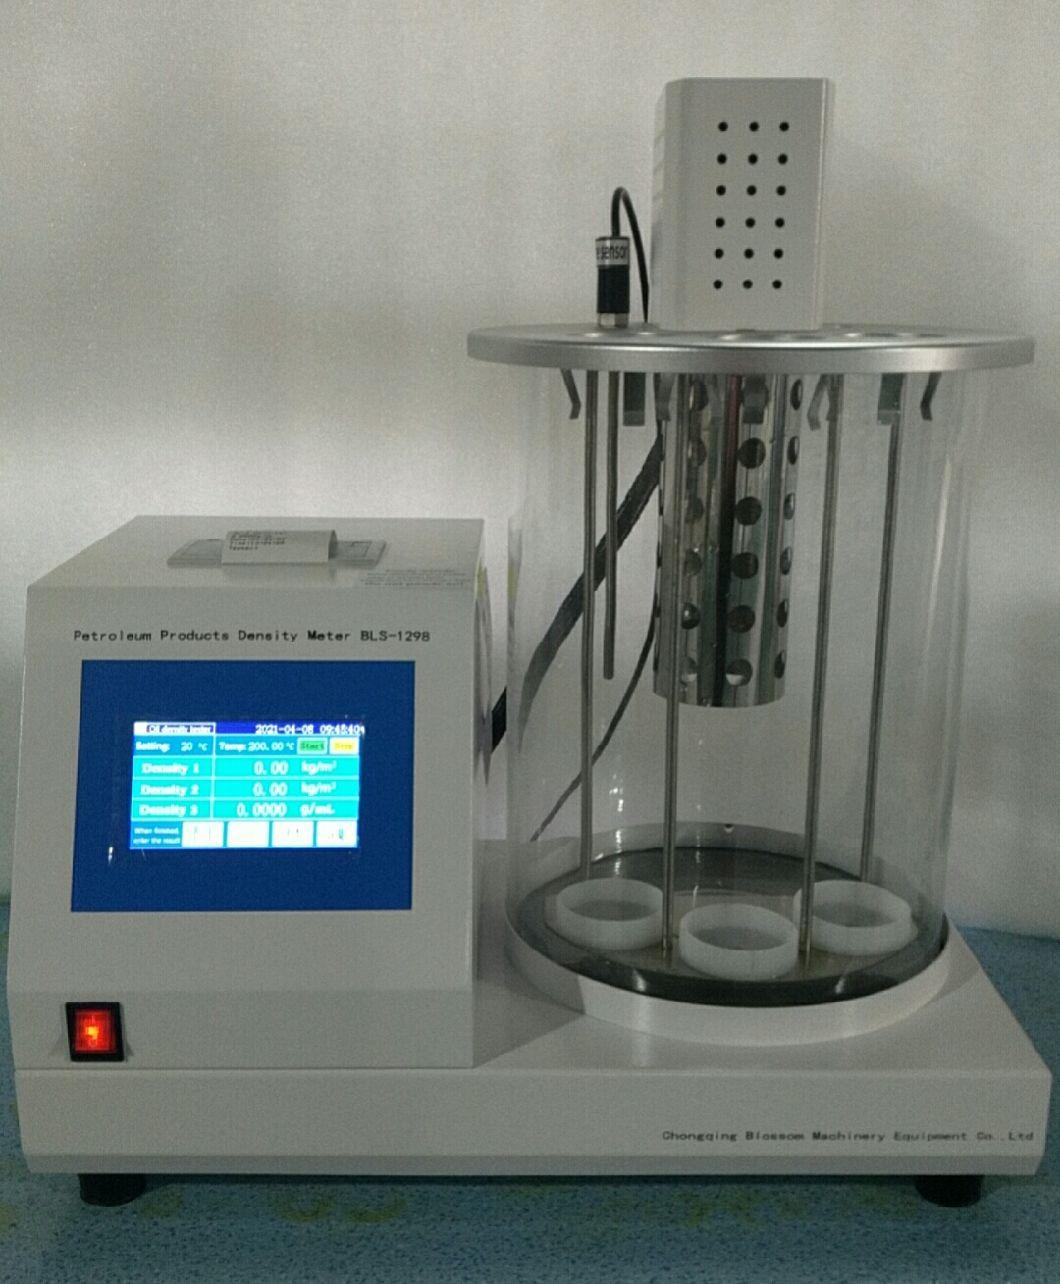 Lubricant Oil Density Testing Equipment for Oil Density Analysis